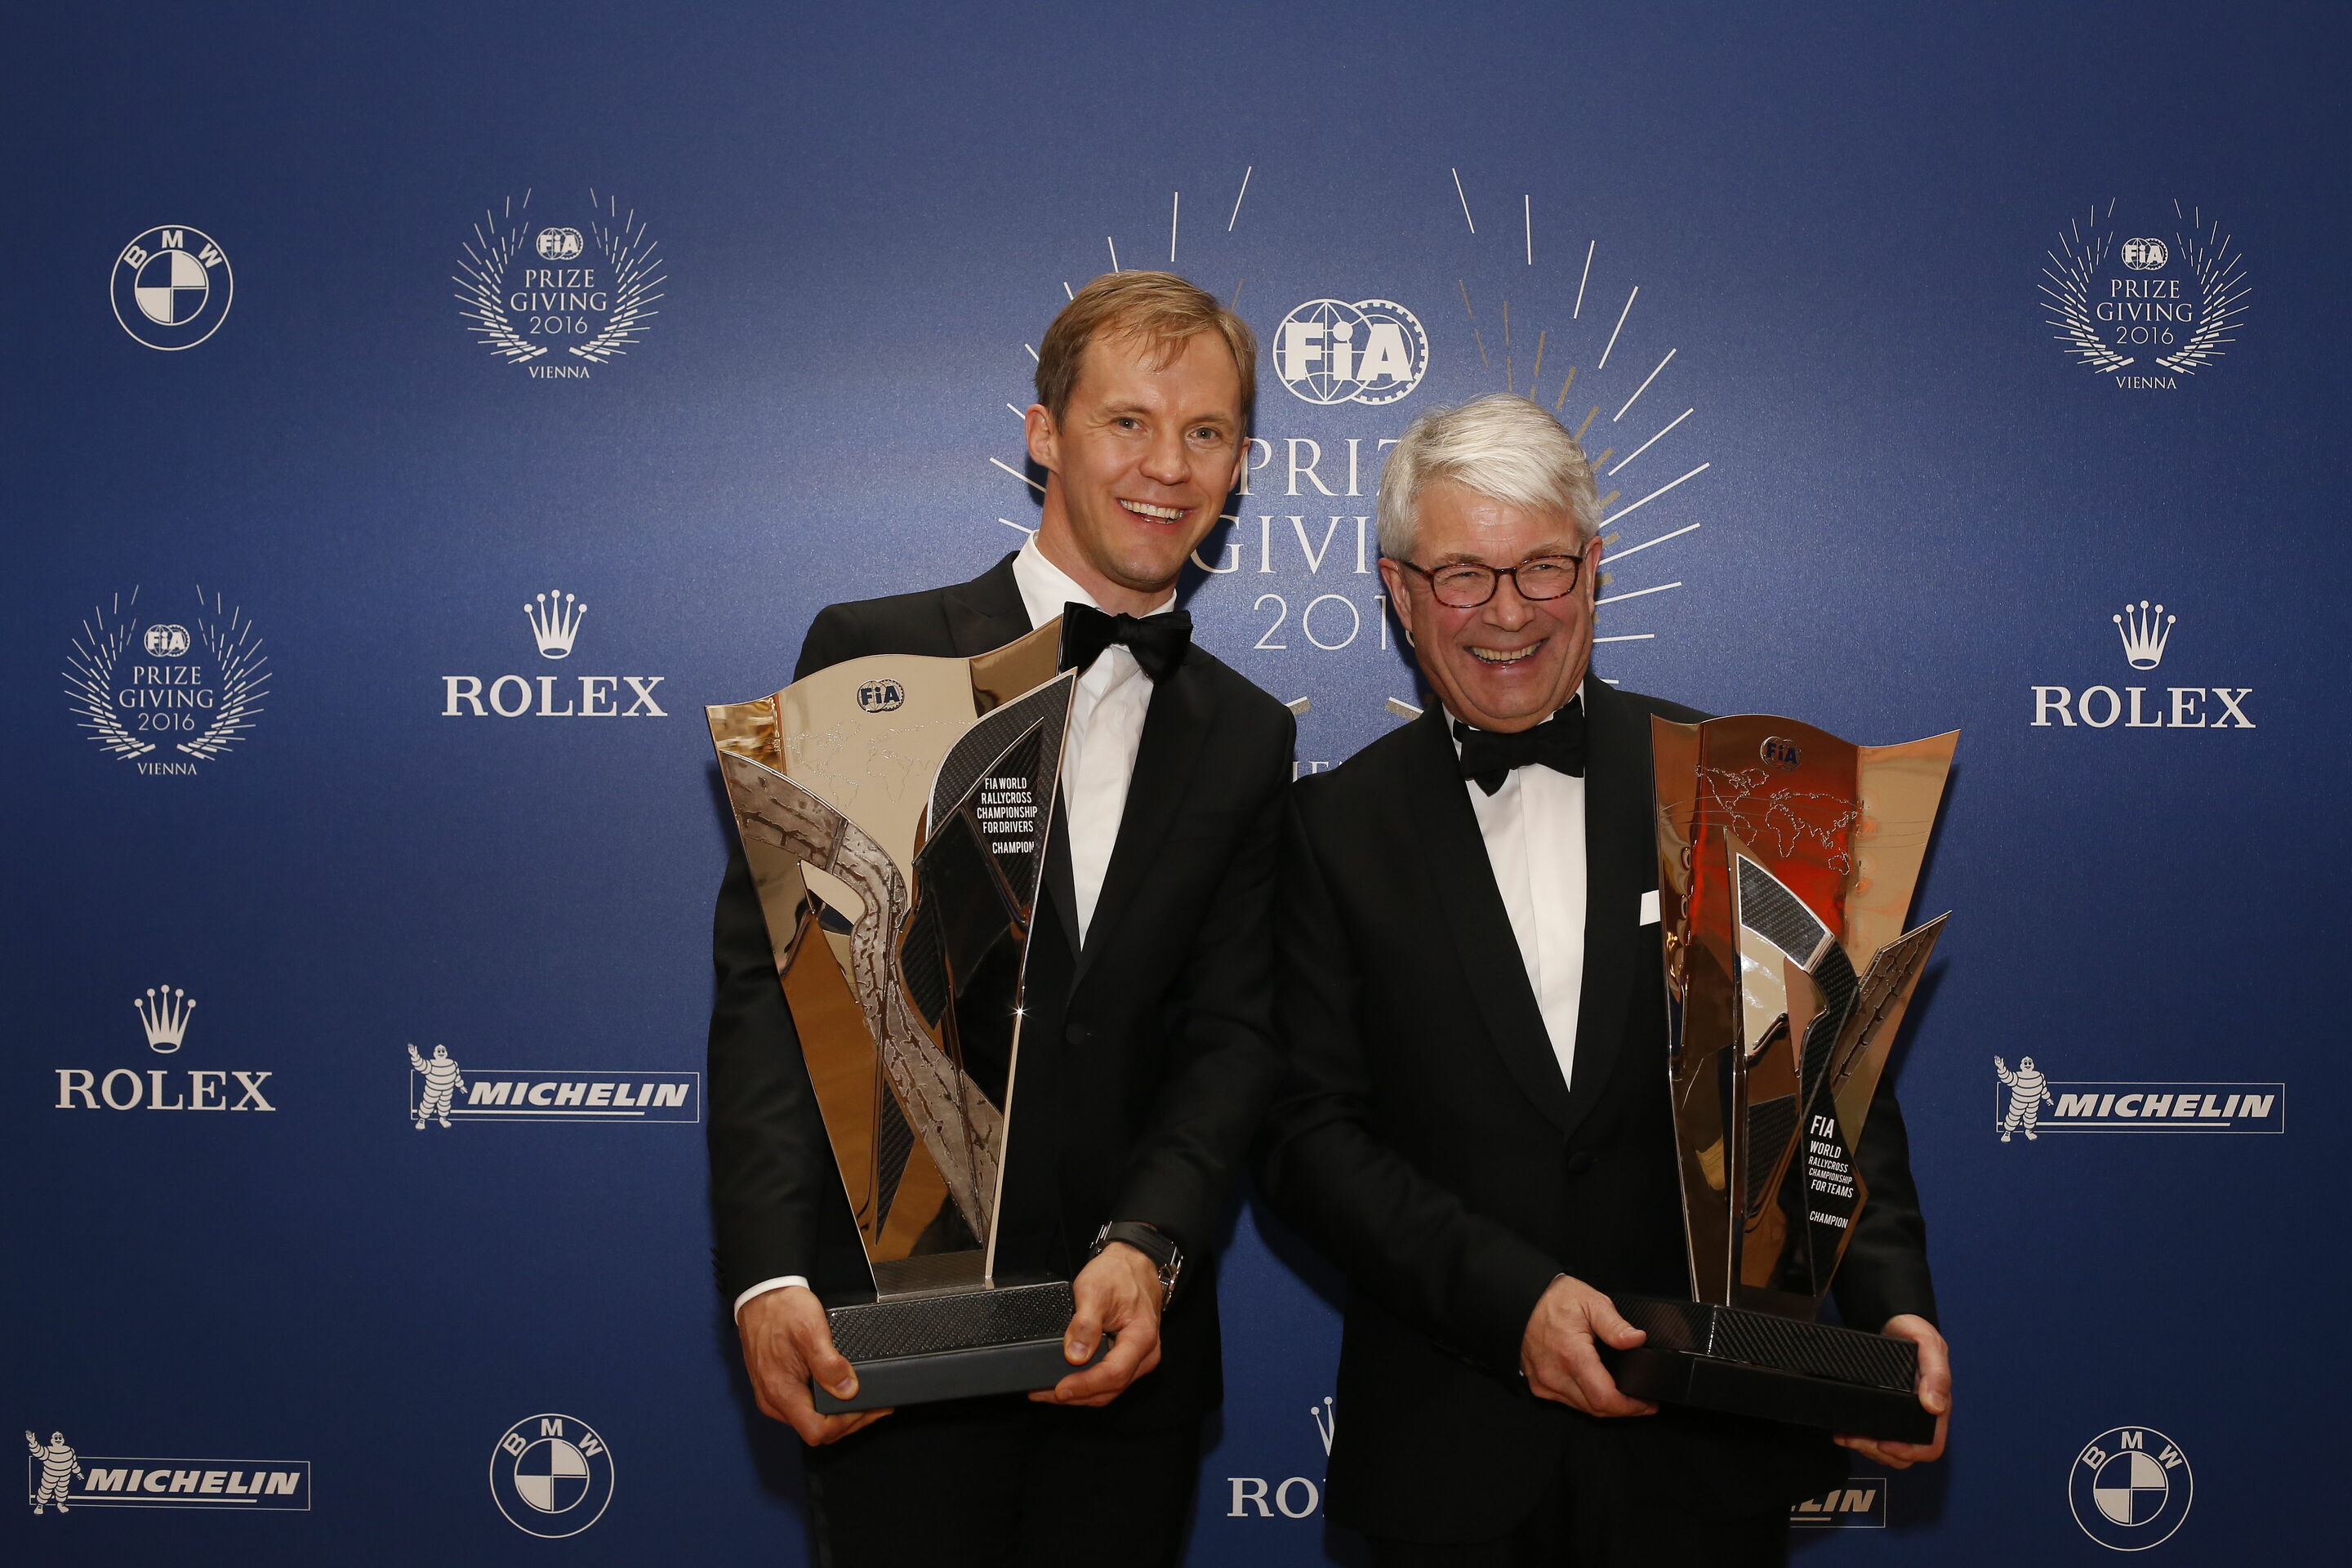 FIA Prize Giving 2016, Vienna